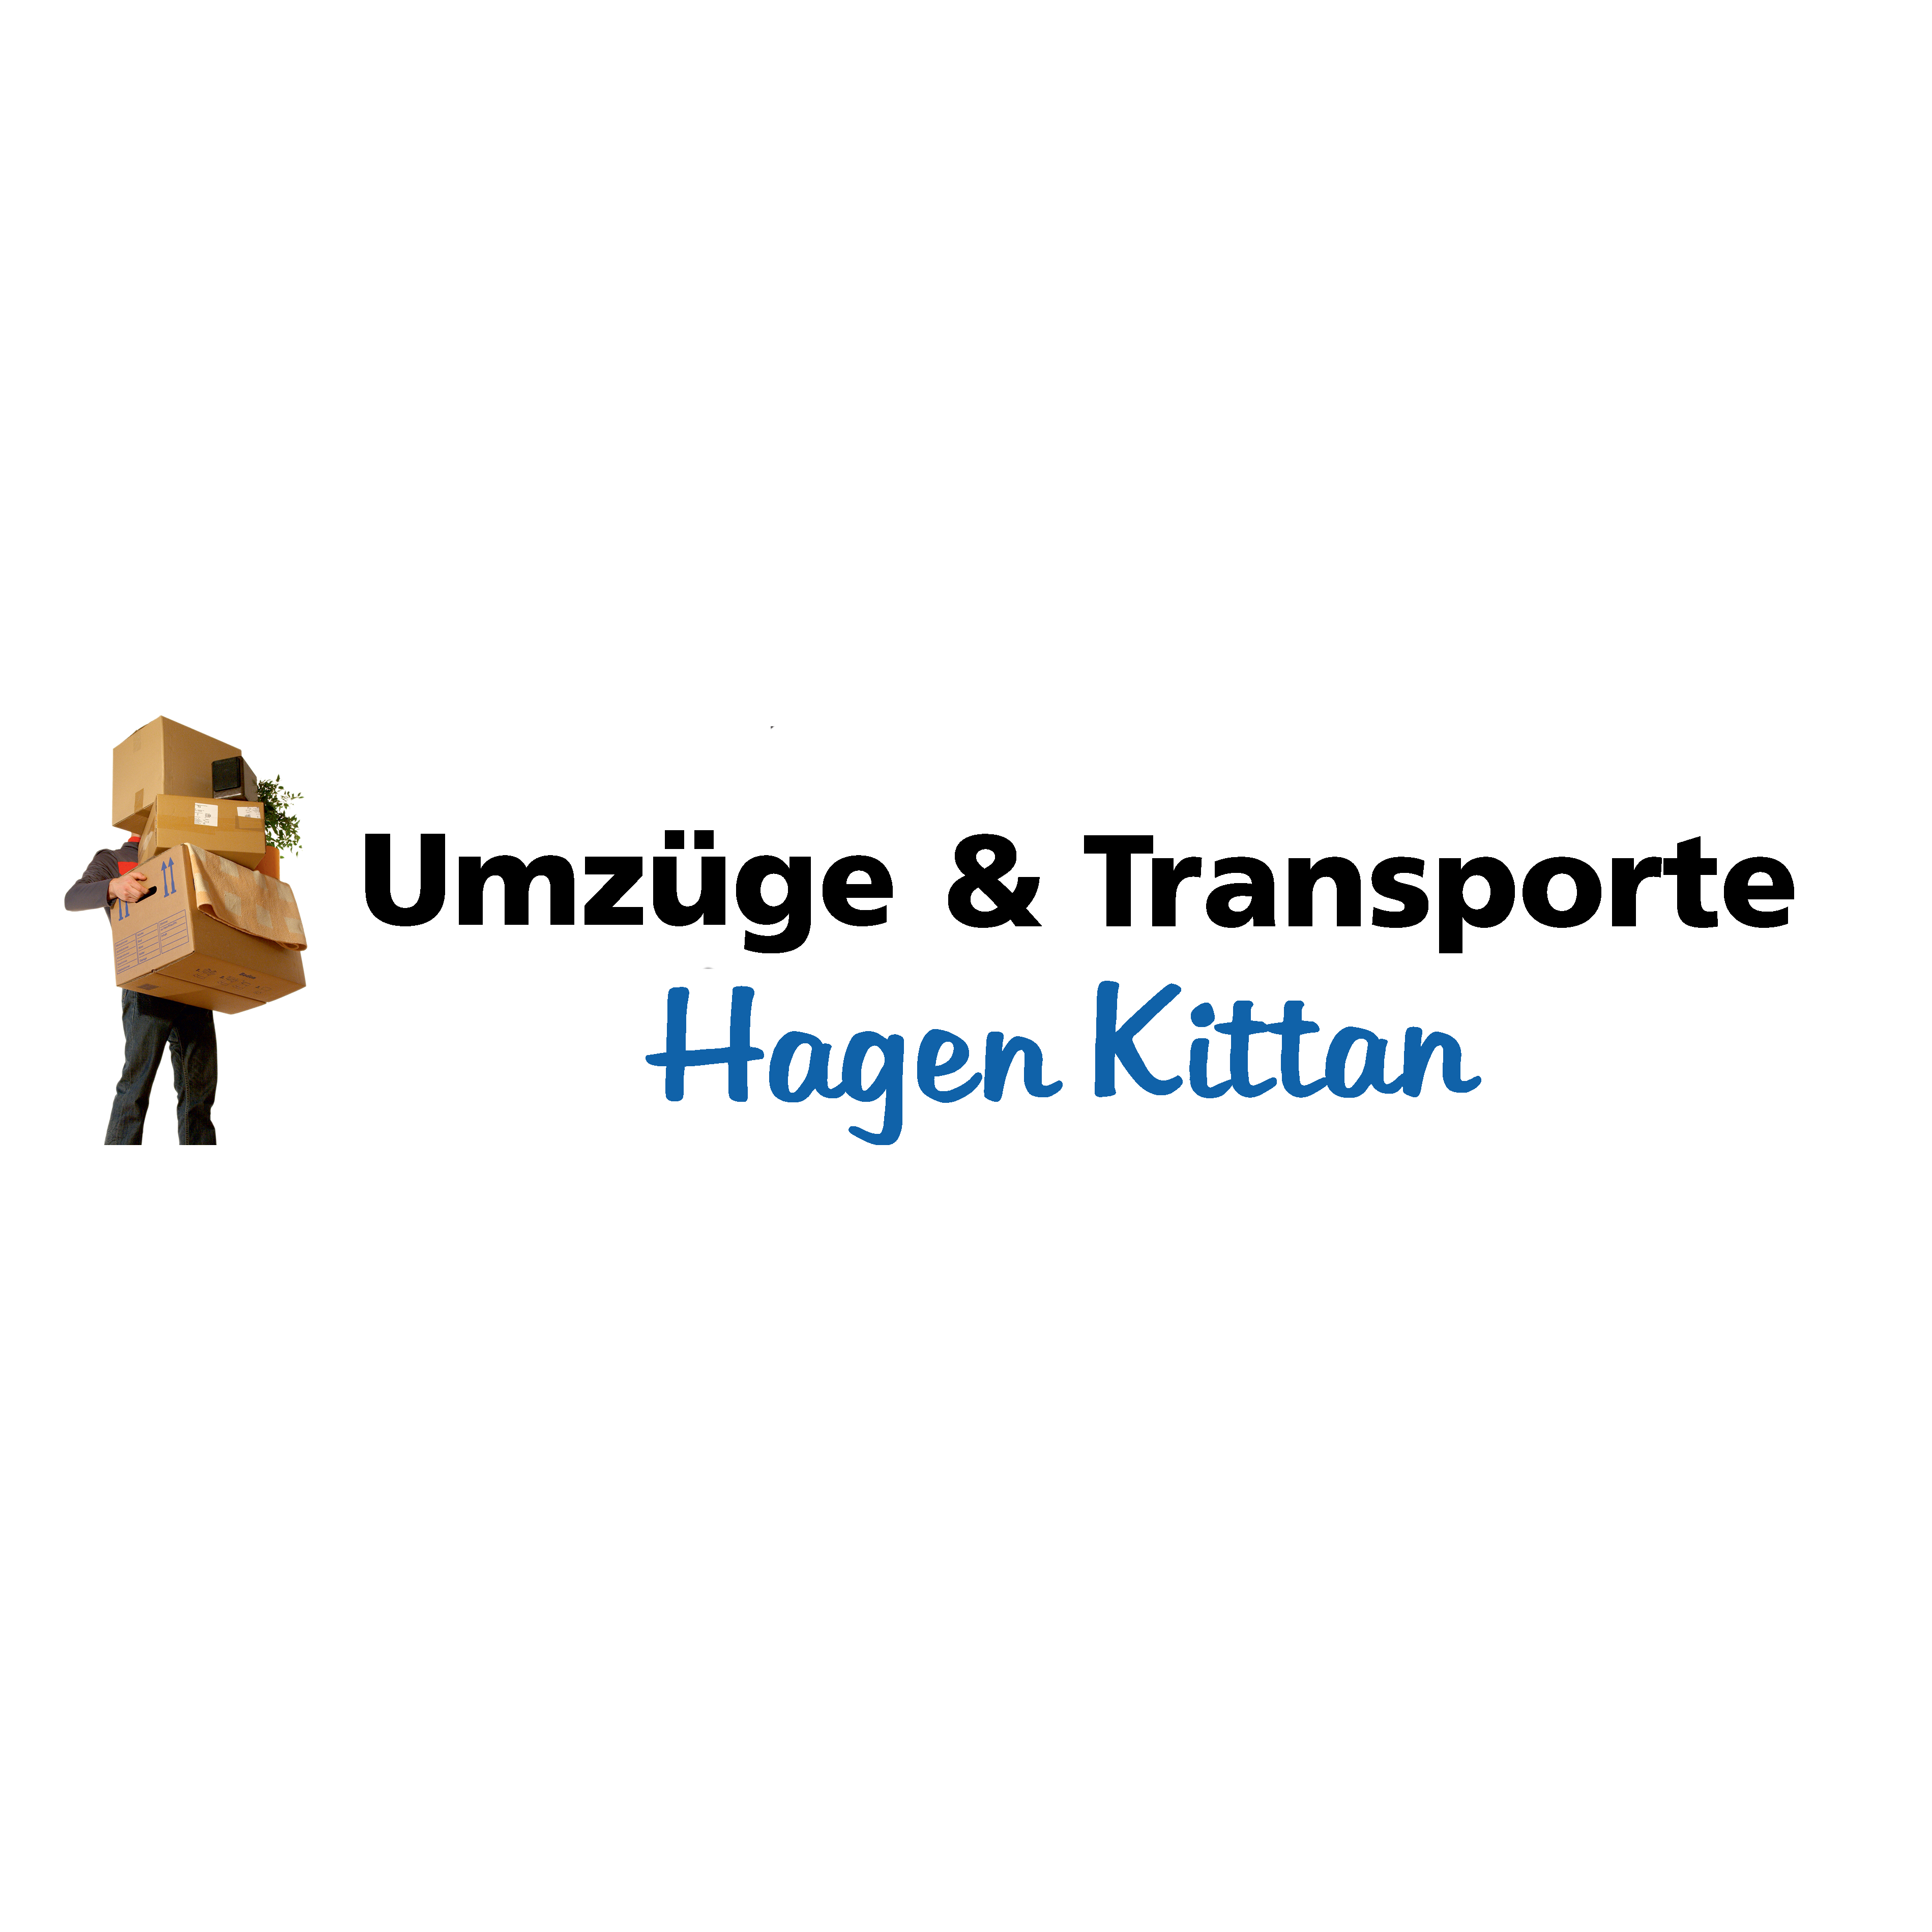 Umzüge & Transporte Hagen Kittan in Weißwasser in der Oberlausitz - Logo